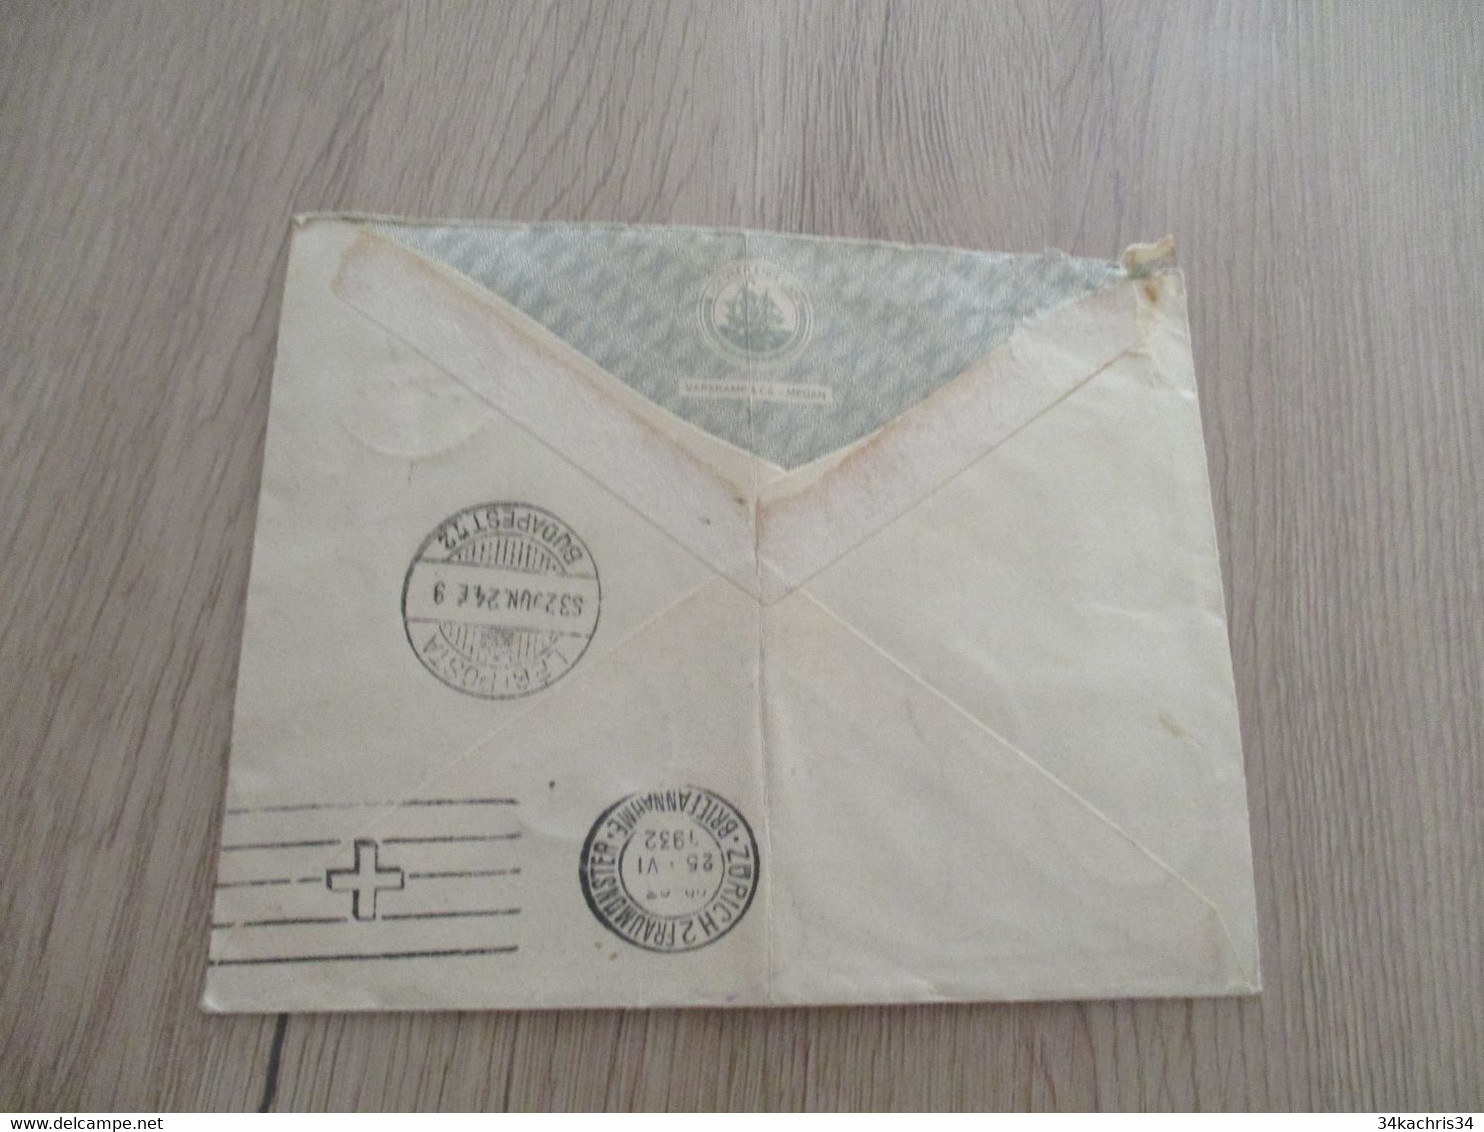 Lettre Pays Bas Nederland Indie En Recommandé Laboehhanbilik Old Stamps Par Avion   1932 - Indie Olandesi